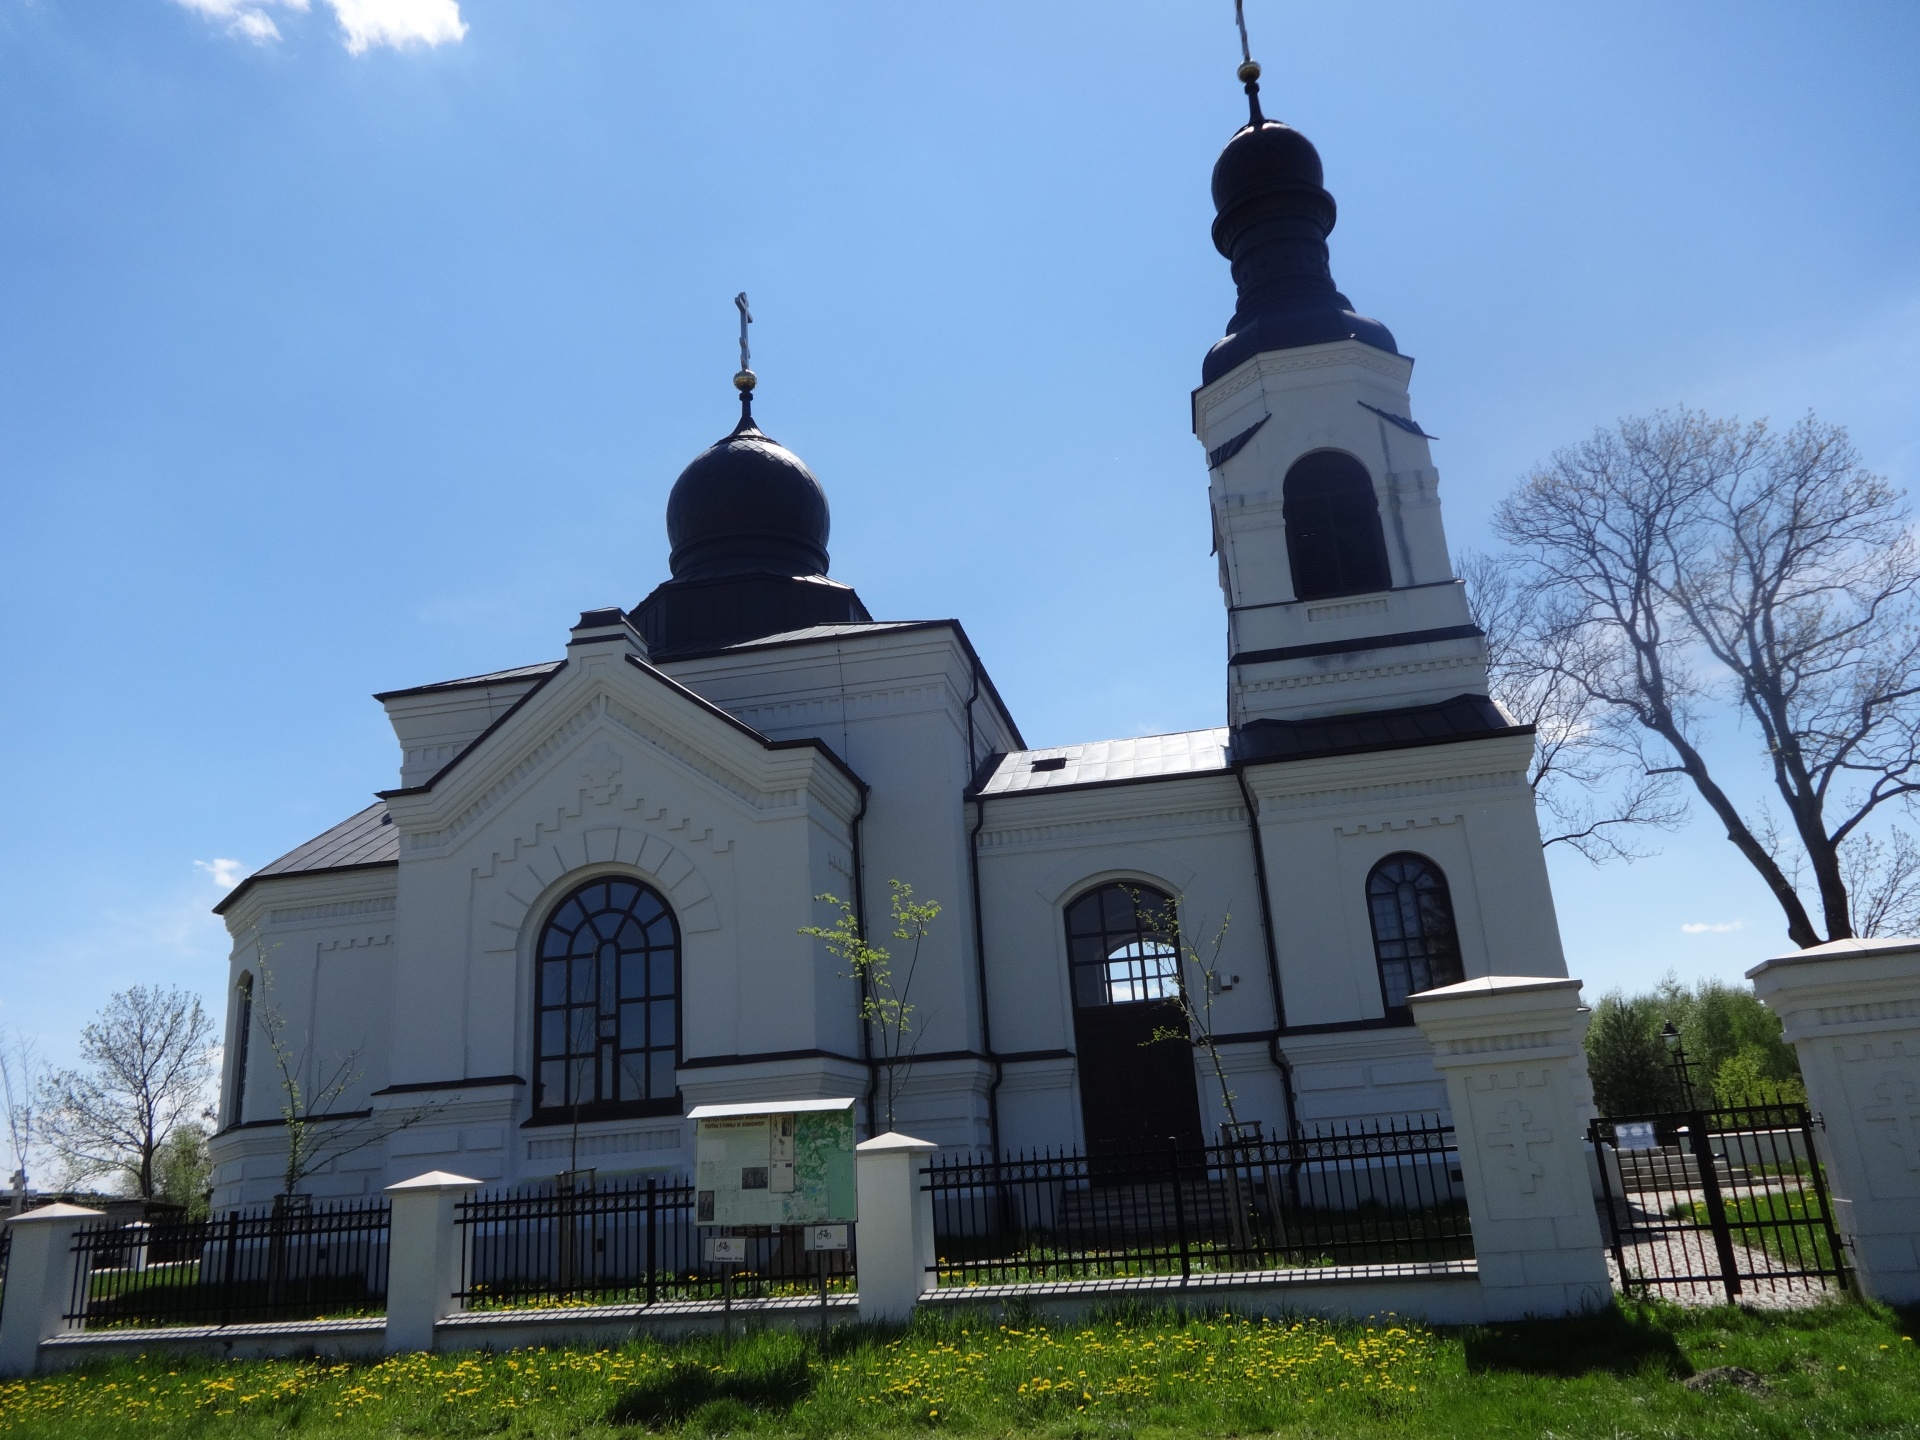 Orthodox church, Sosnowica, Poland, spring 2021